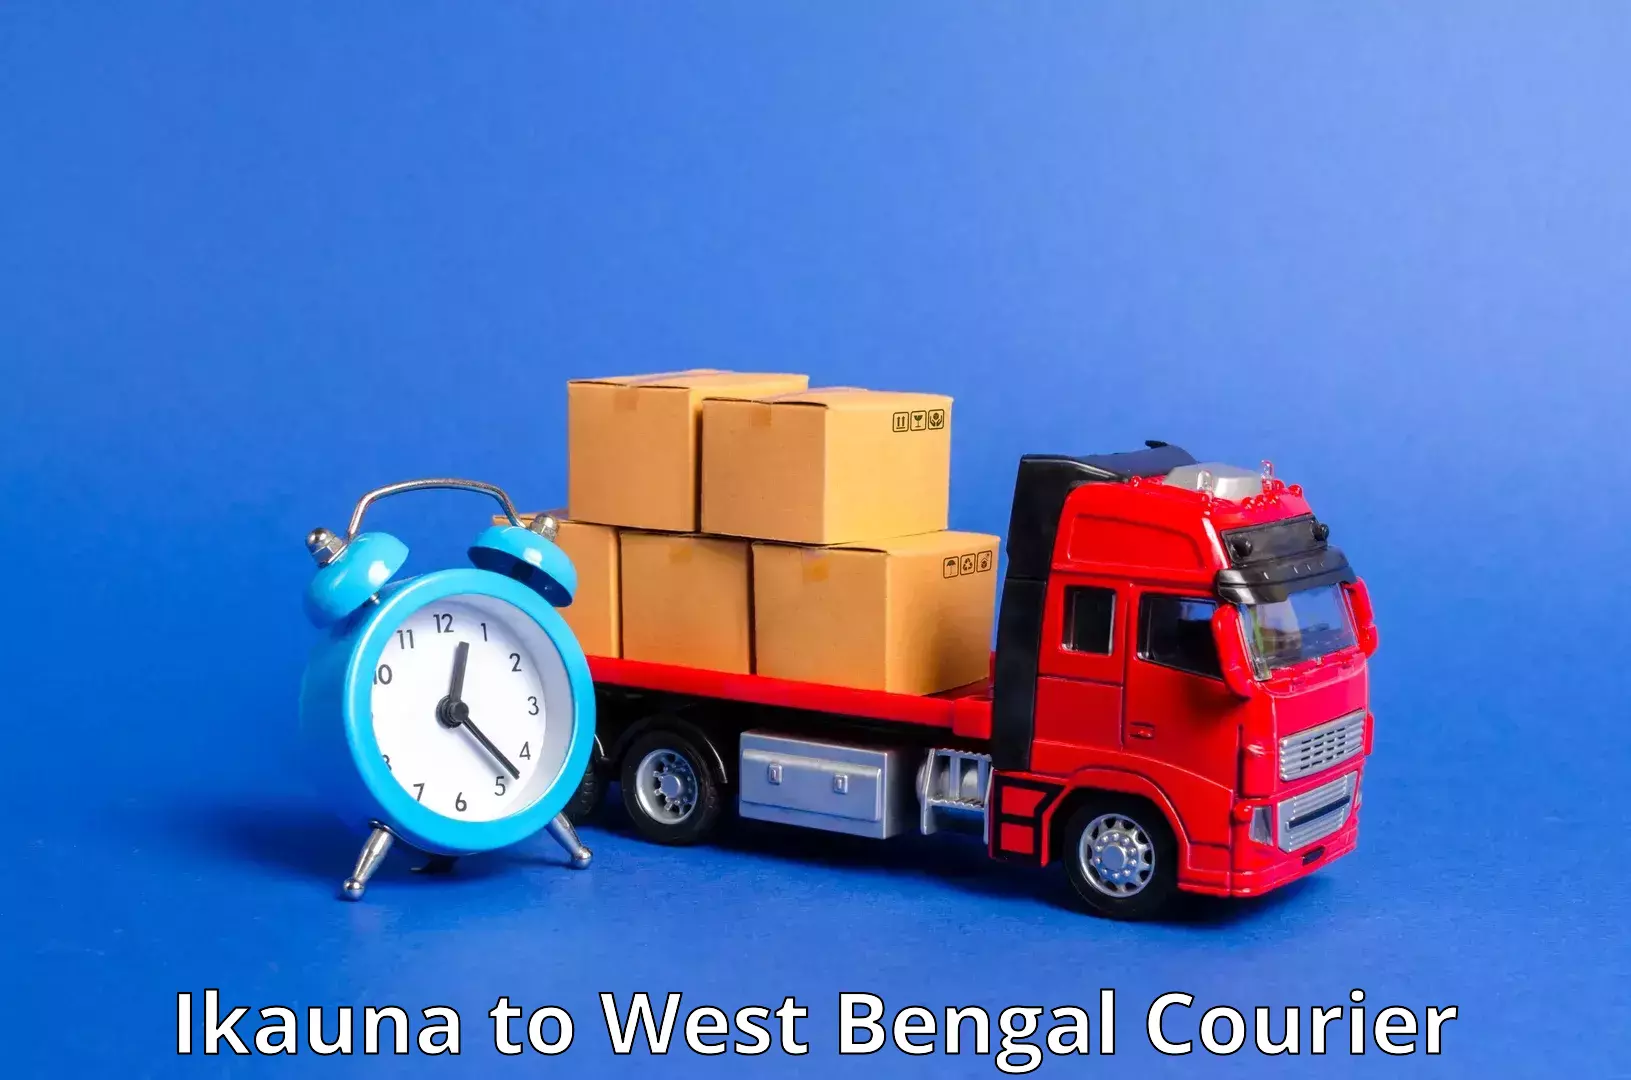 Remote area delivery Ikauna to North 24 Parganas